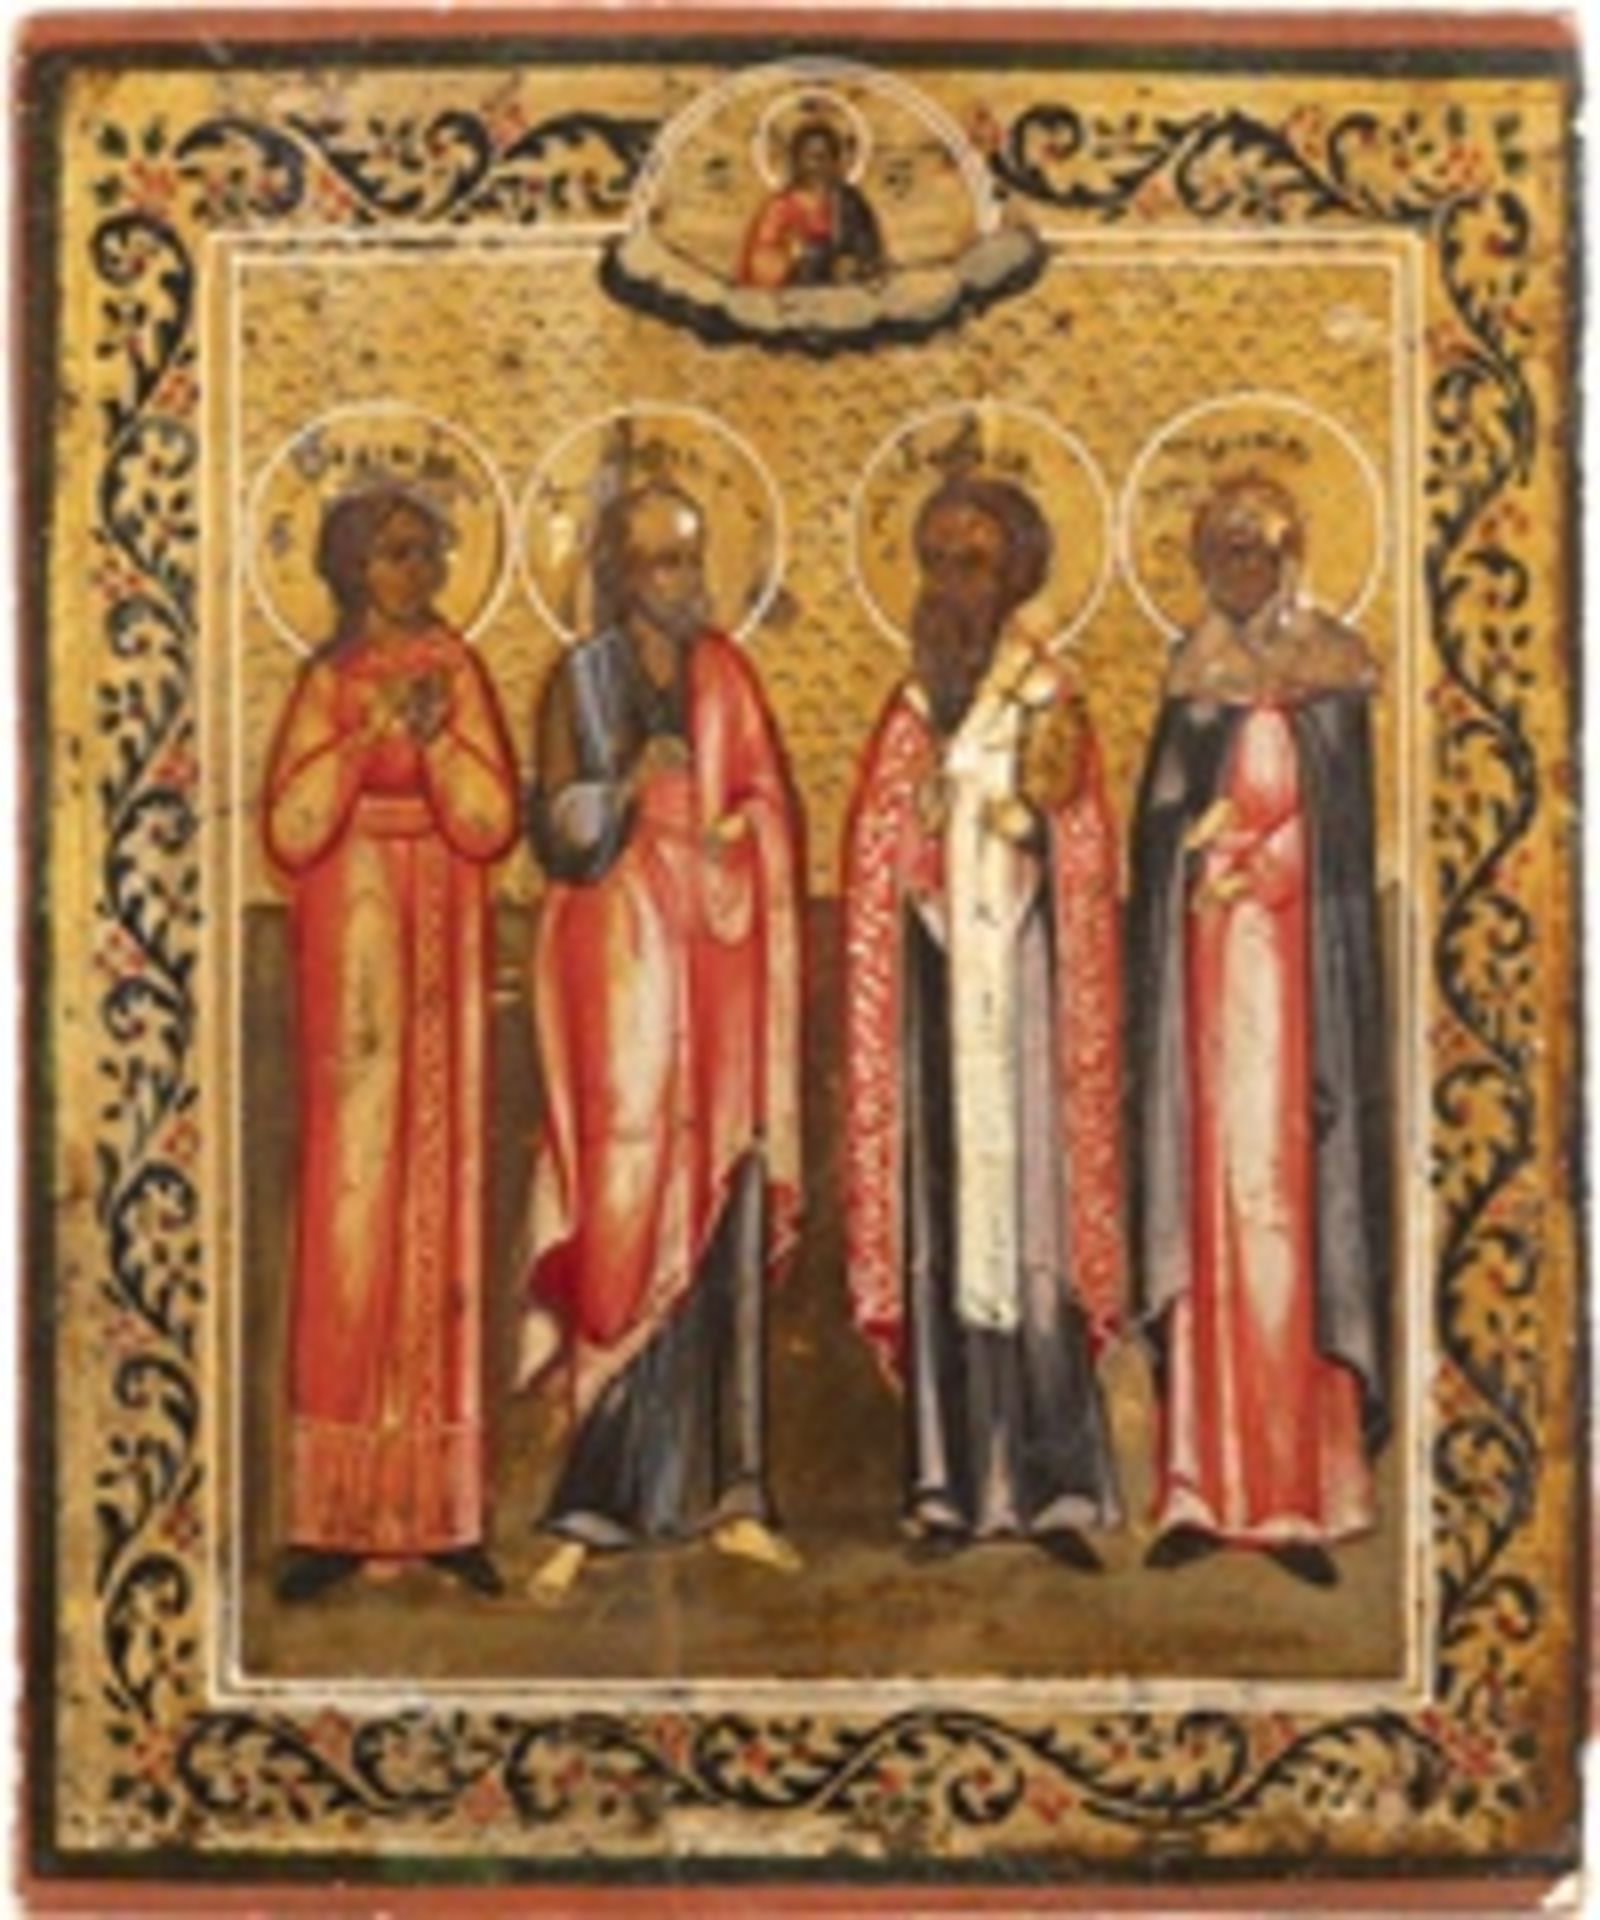 IKONE MIT DEN HEILIGEN NADESCHDA, DEM APOSTEL PAULUS, BASIL DEM GROSSEN UND PELAGIA  - Bild 2 aus 3